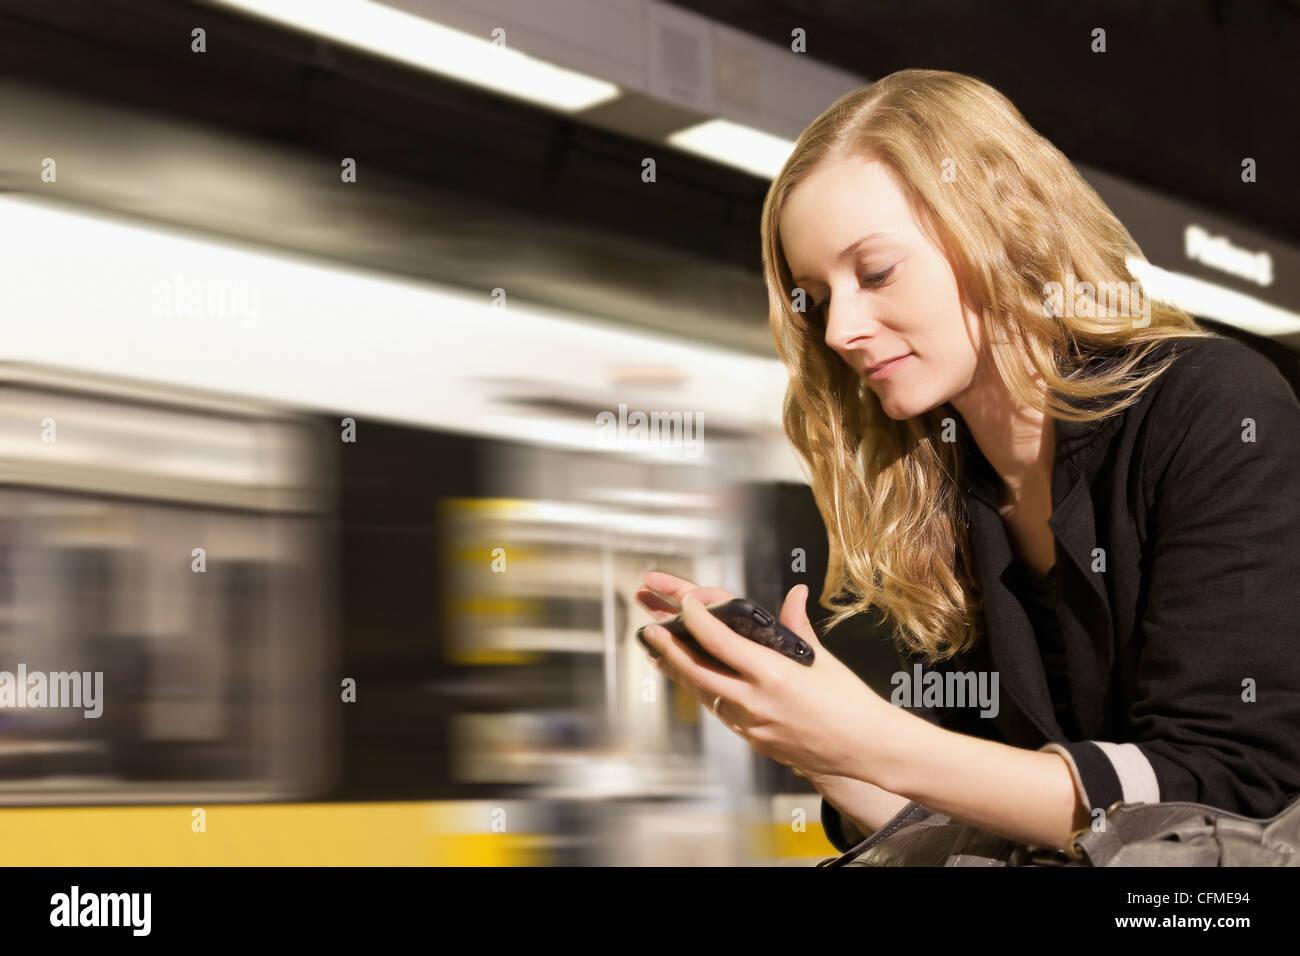 Stati Uniti, California, Los Angeles, donna l'invio dei messaggi di testo sulla stazione della metropolitana Foto Stock